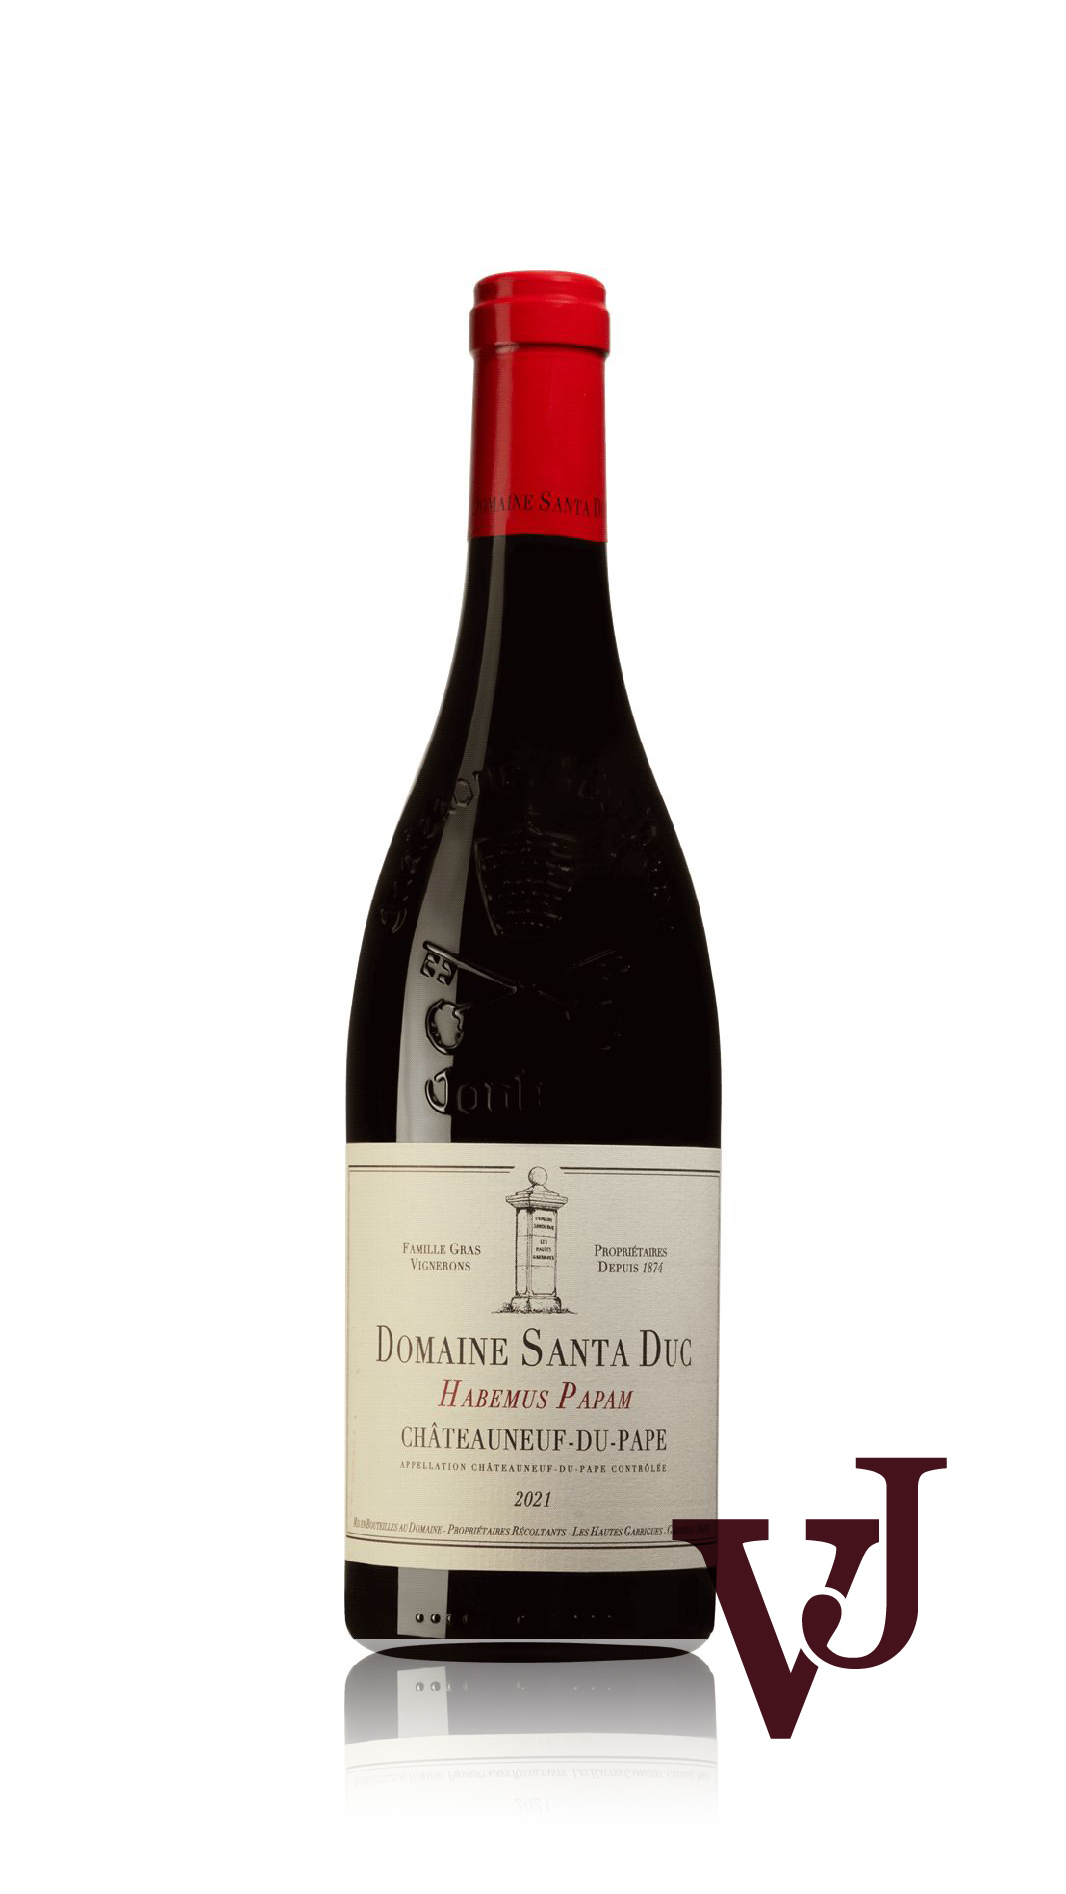 Rött Vin - Domaine Santa Duc Habemus Papam 2021 artikel nummer 9442901 från producenten Domaine Santa Duc från området Frankrike